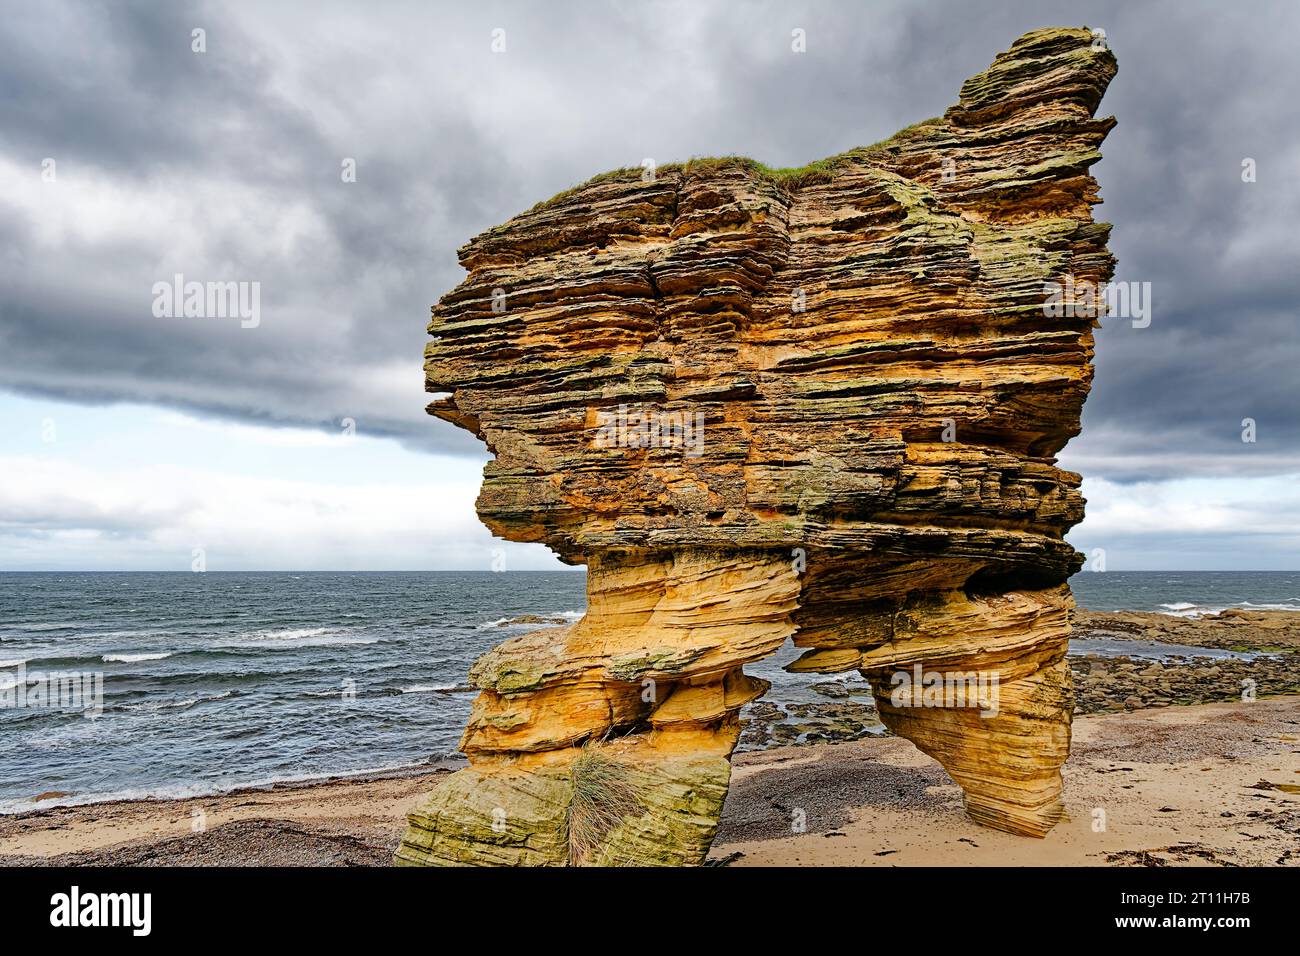 Hopeman Moray Coast Scozia, gigantesca arenaria sulla spiaggia sabbiosa che si affaccia sul mare Foto Stock